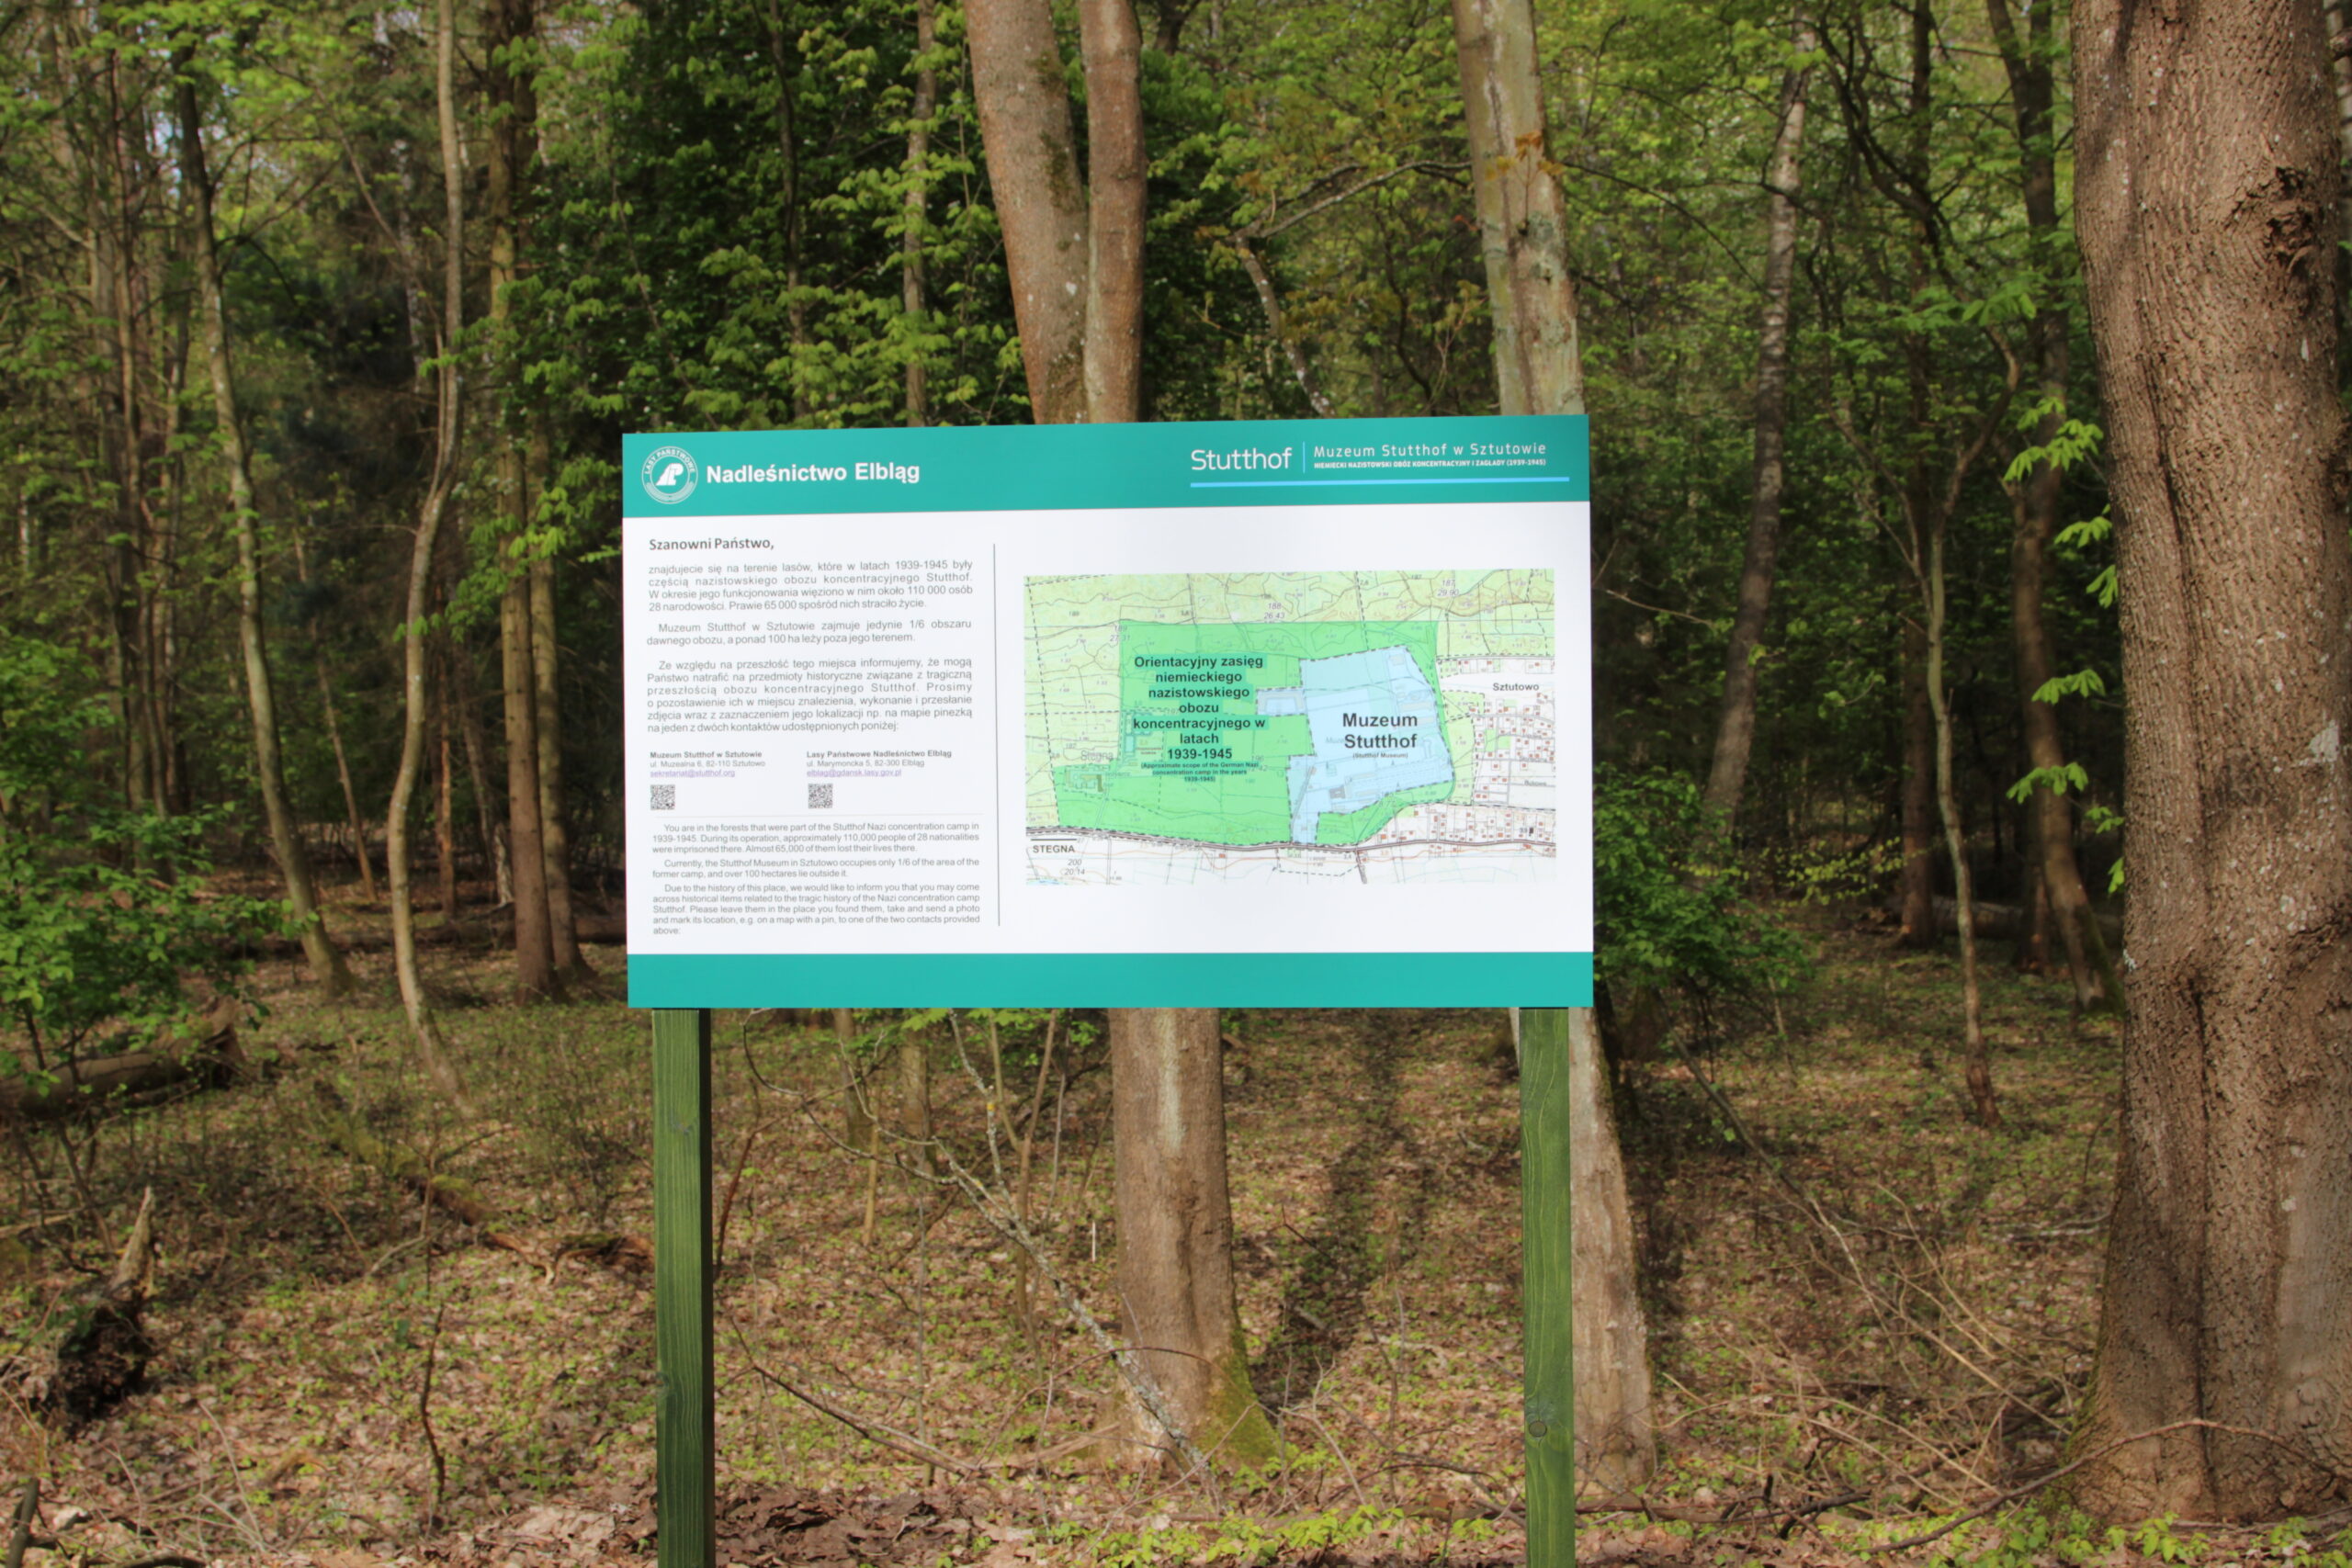 Tablica informacyjna z zaznaczonym dawnym terenem obozu i naniesioną na nią mapą muzeum Stutthof.